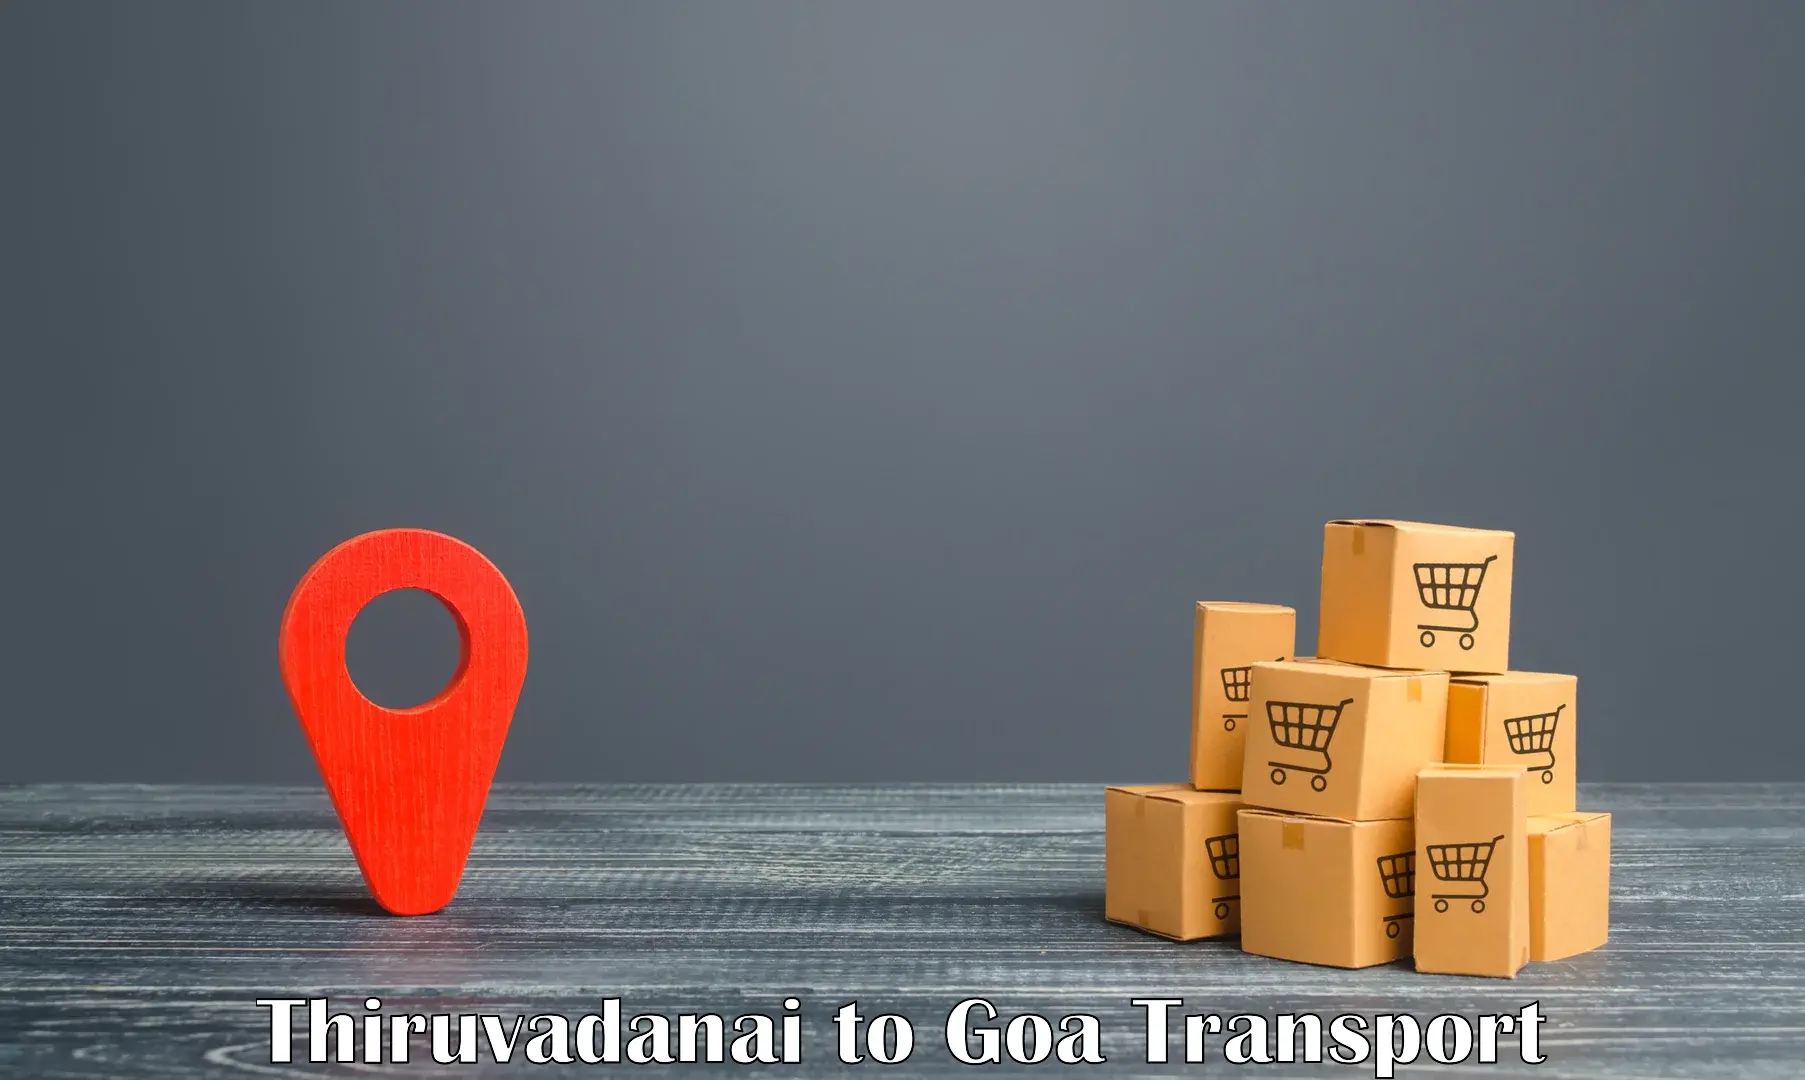 Cargo transportation services Thiruvadanai to Goa